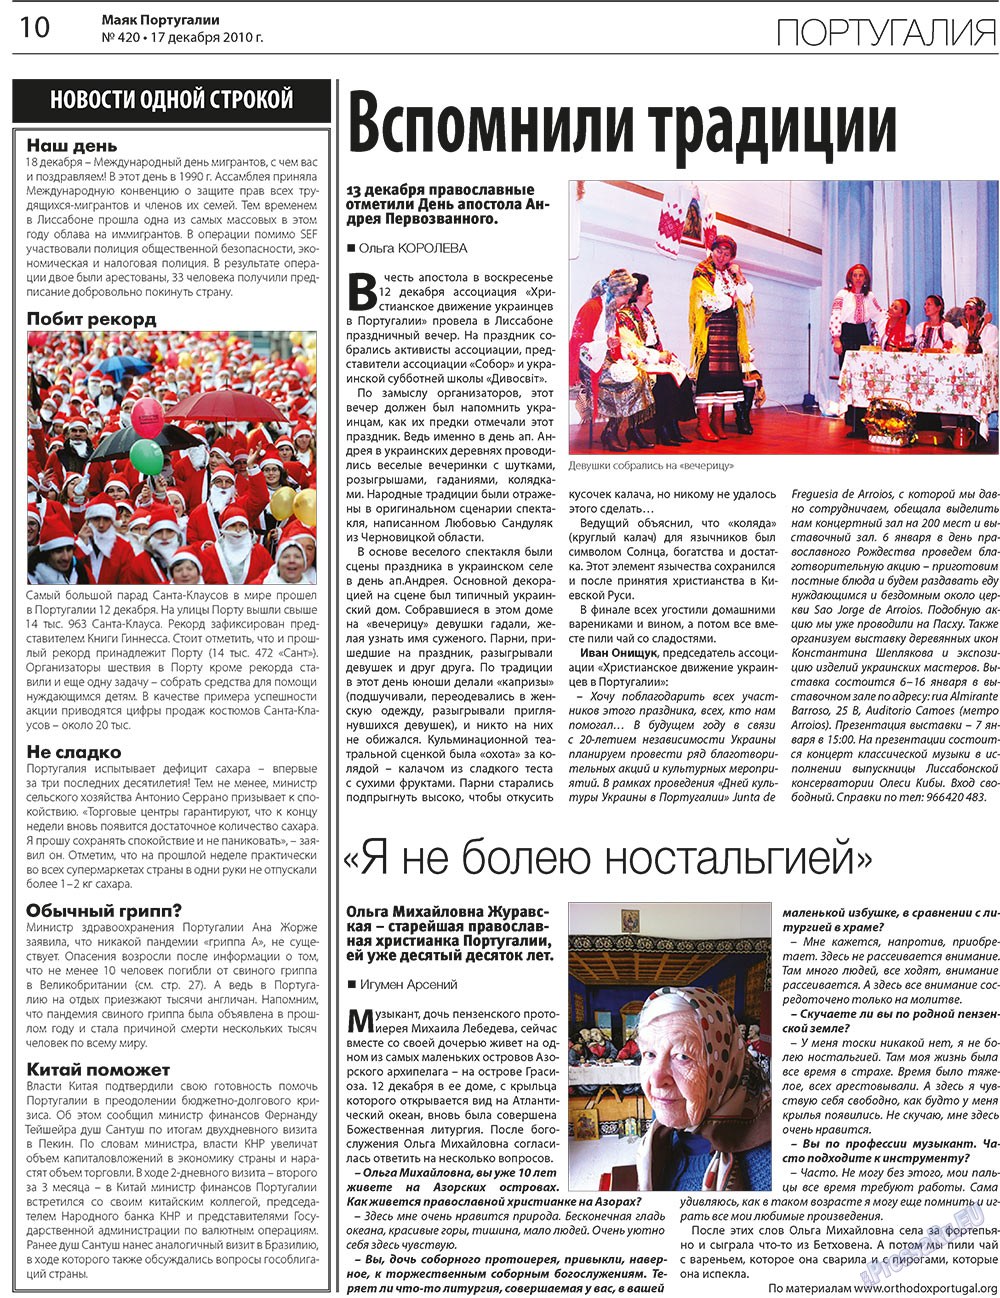 Маяк Португалии (газета). 2010 год, номер 420, стр. 10